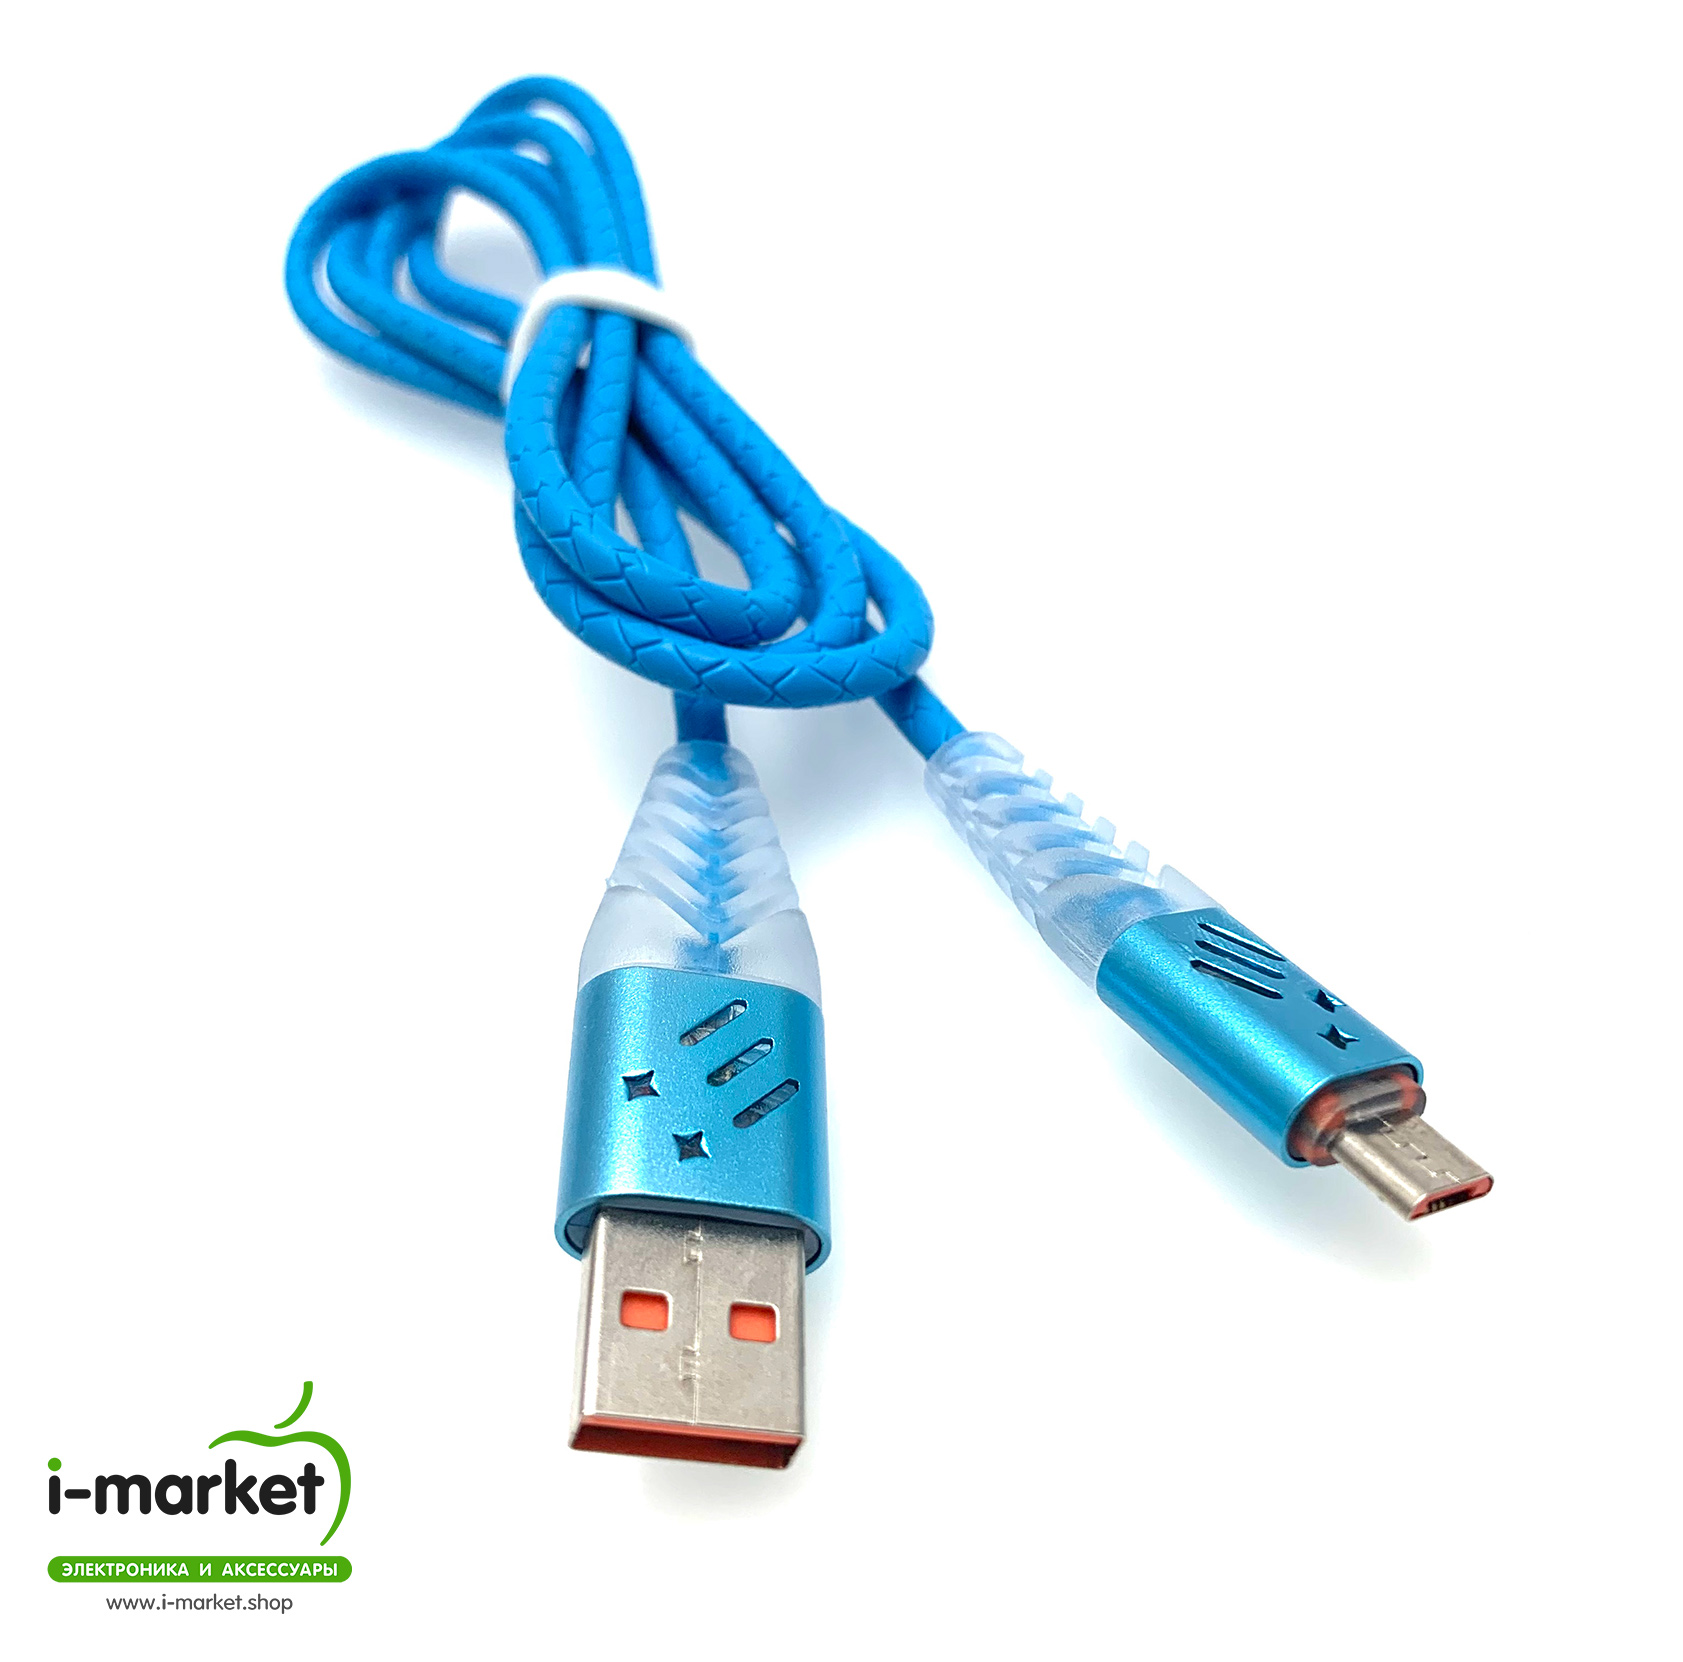 USB Дата-кабель "G03" micro USB силиконовый, длина 1 метр, цвет голубой, текстурированная оболочка, оранжевые контакты.